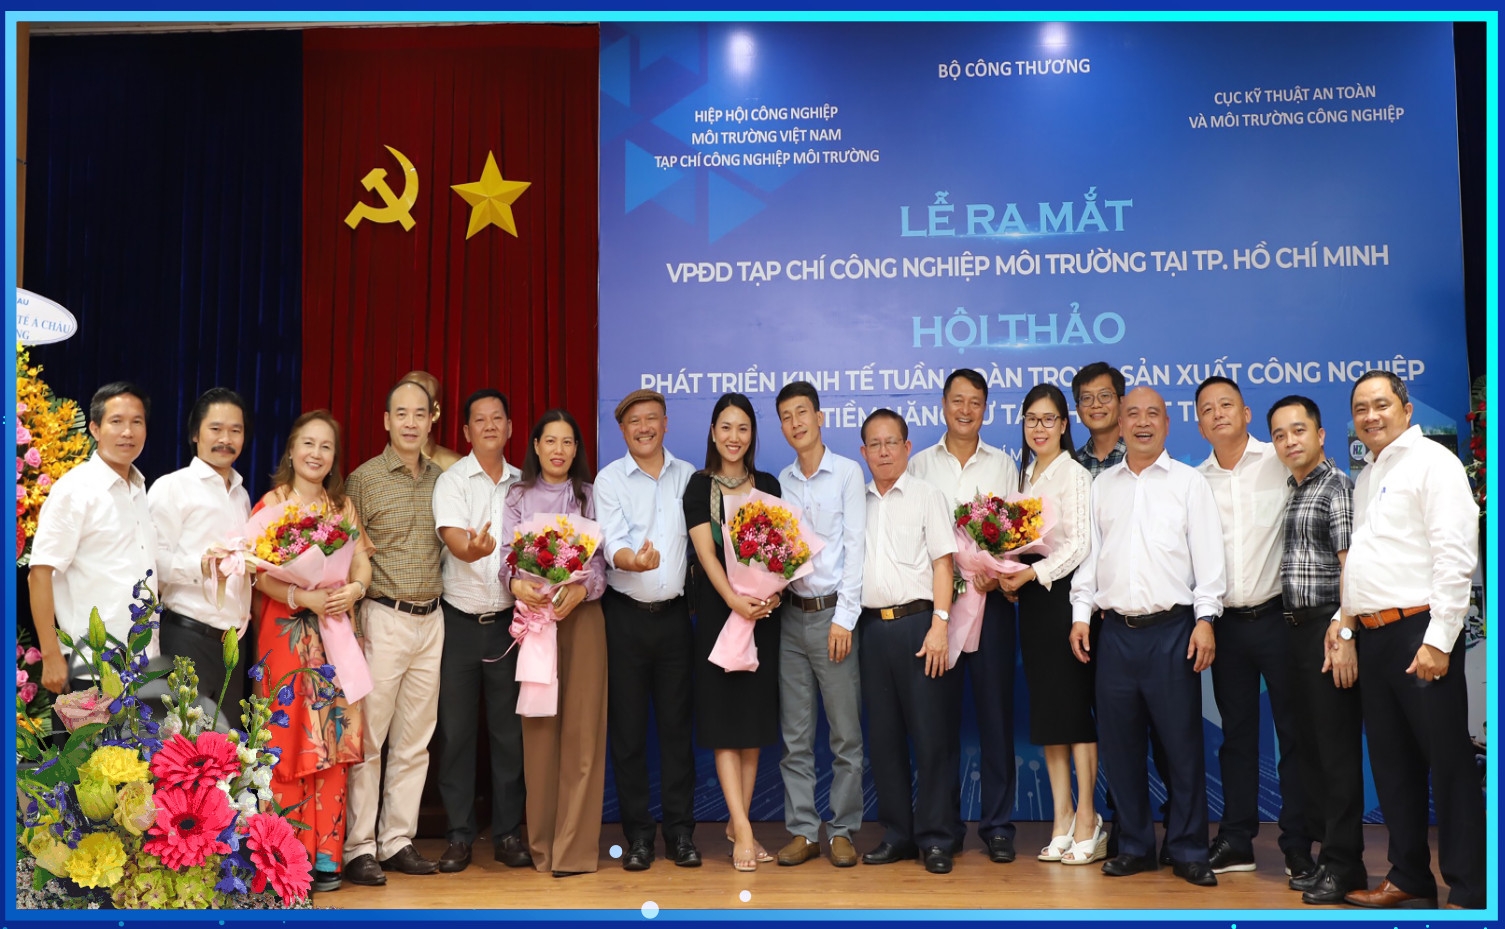 Ra mắt Văn phòng đại diện Tạp chí Công nghiệp môi trường tại TP. Hồ Chí Minh